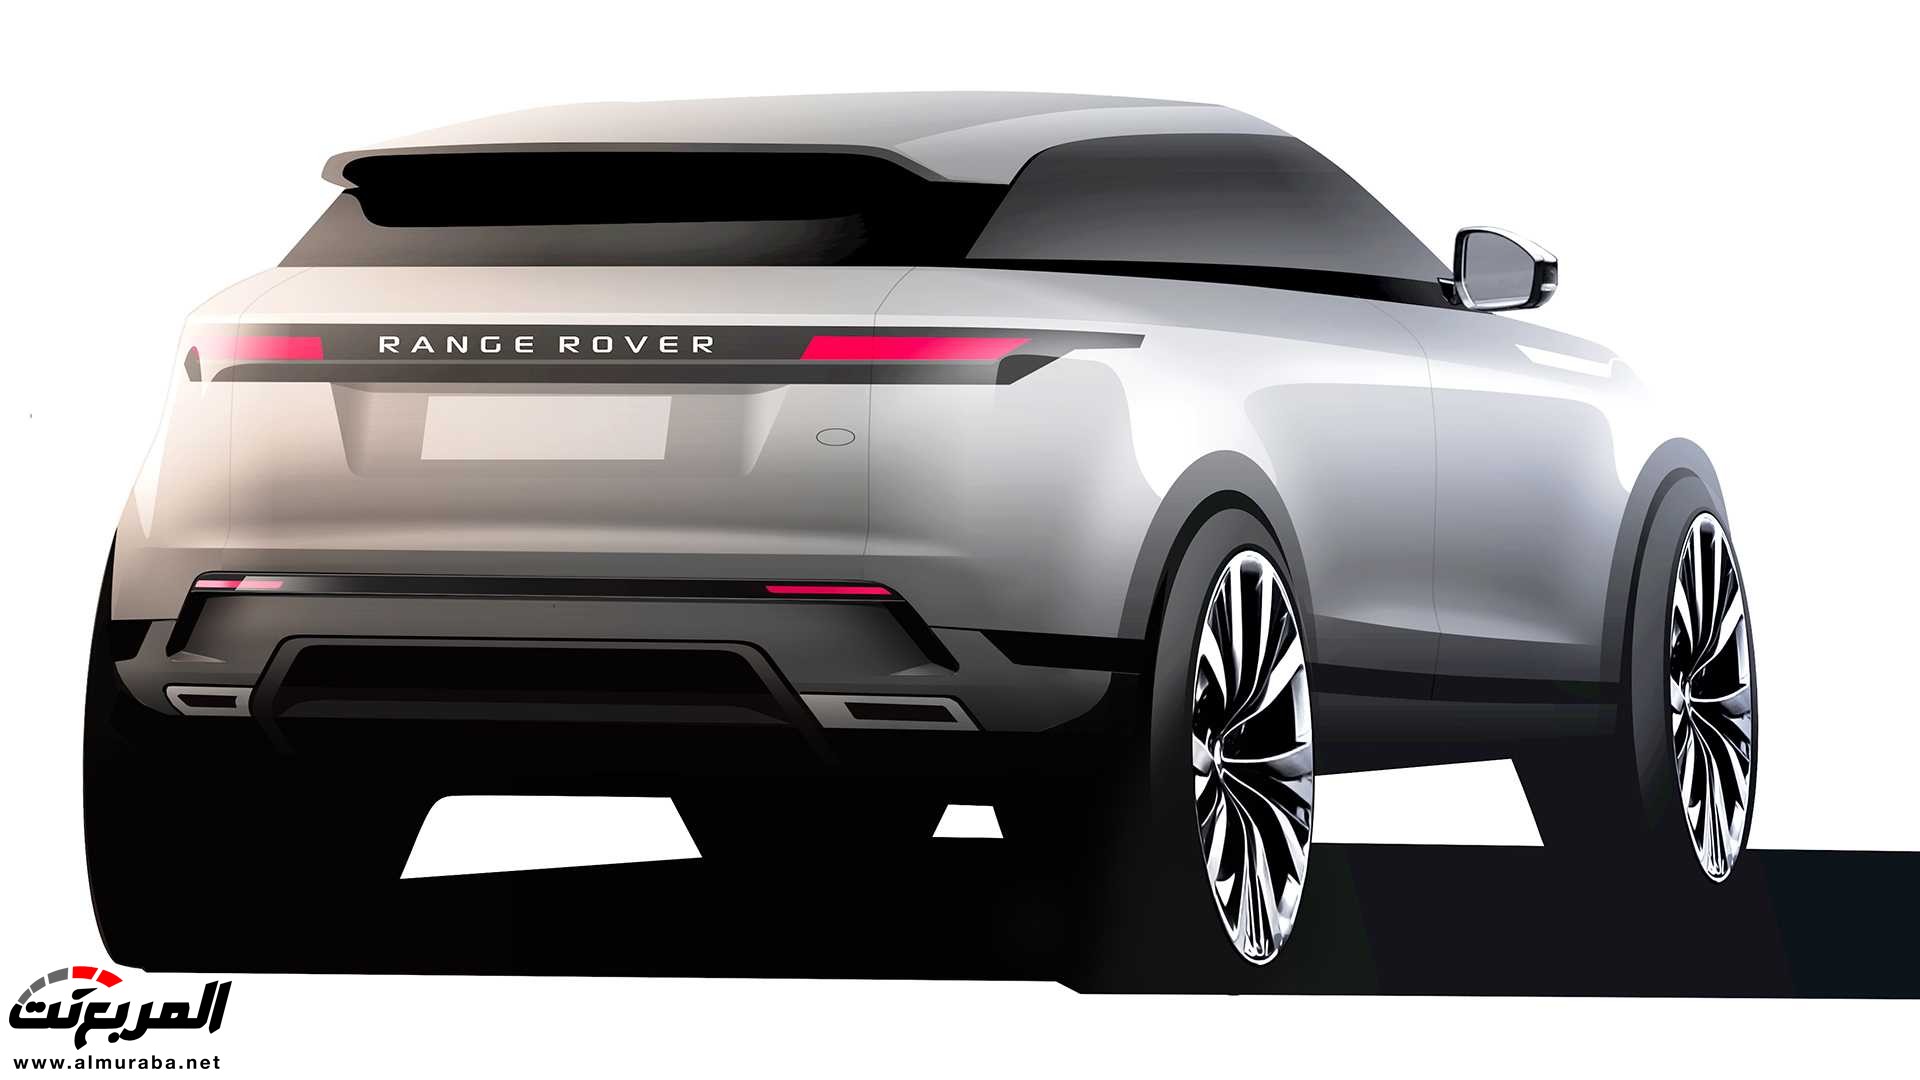 اهم 7 معلومات عن رنج روفر ايفوك 2020 الجديدة كلياً Range Rover Evoque 357